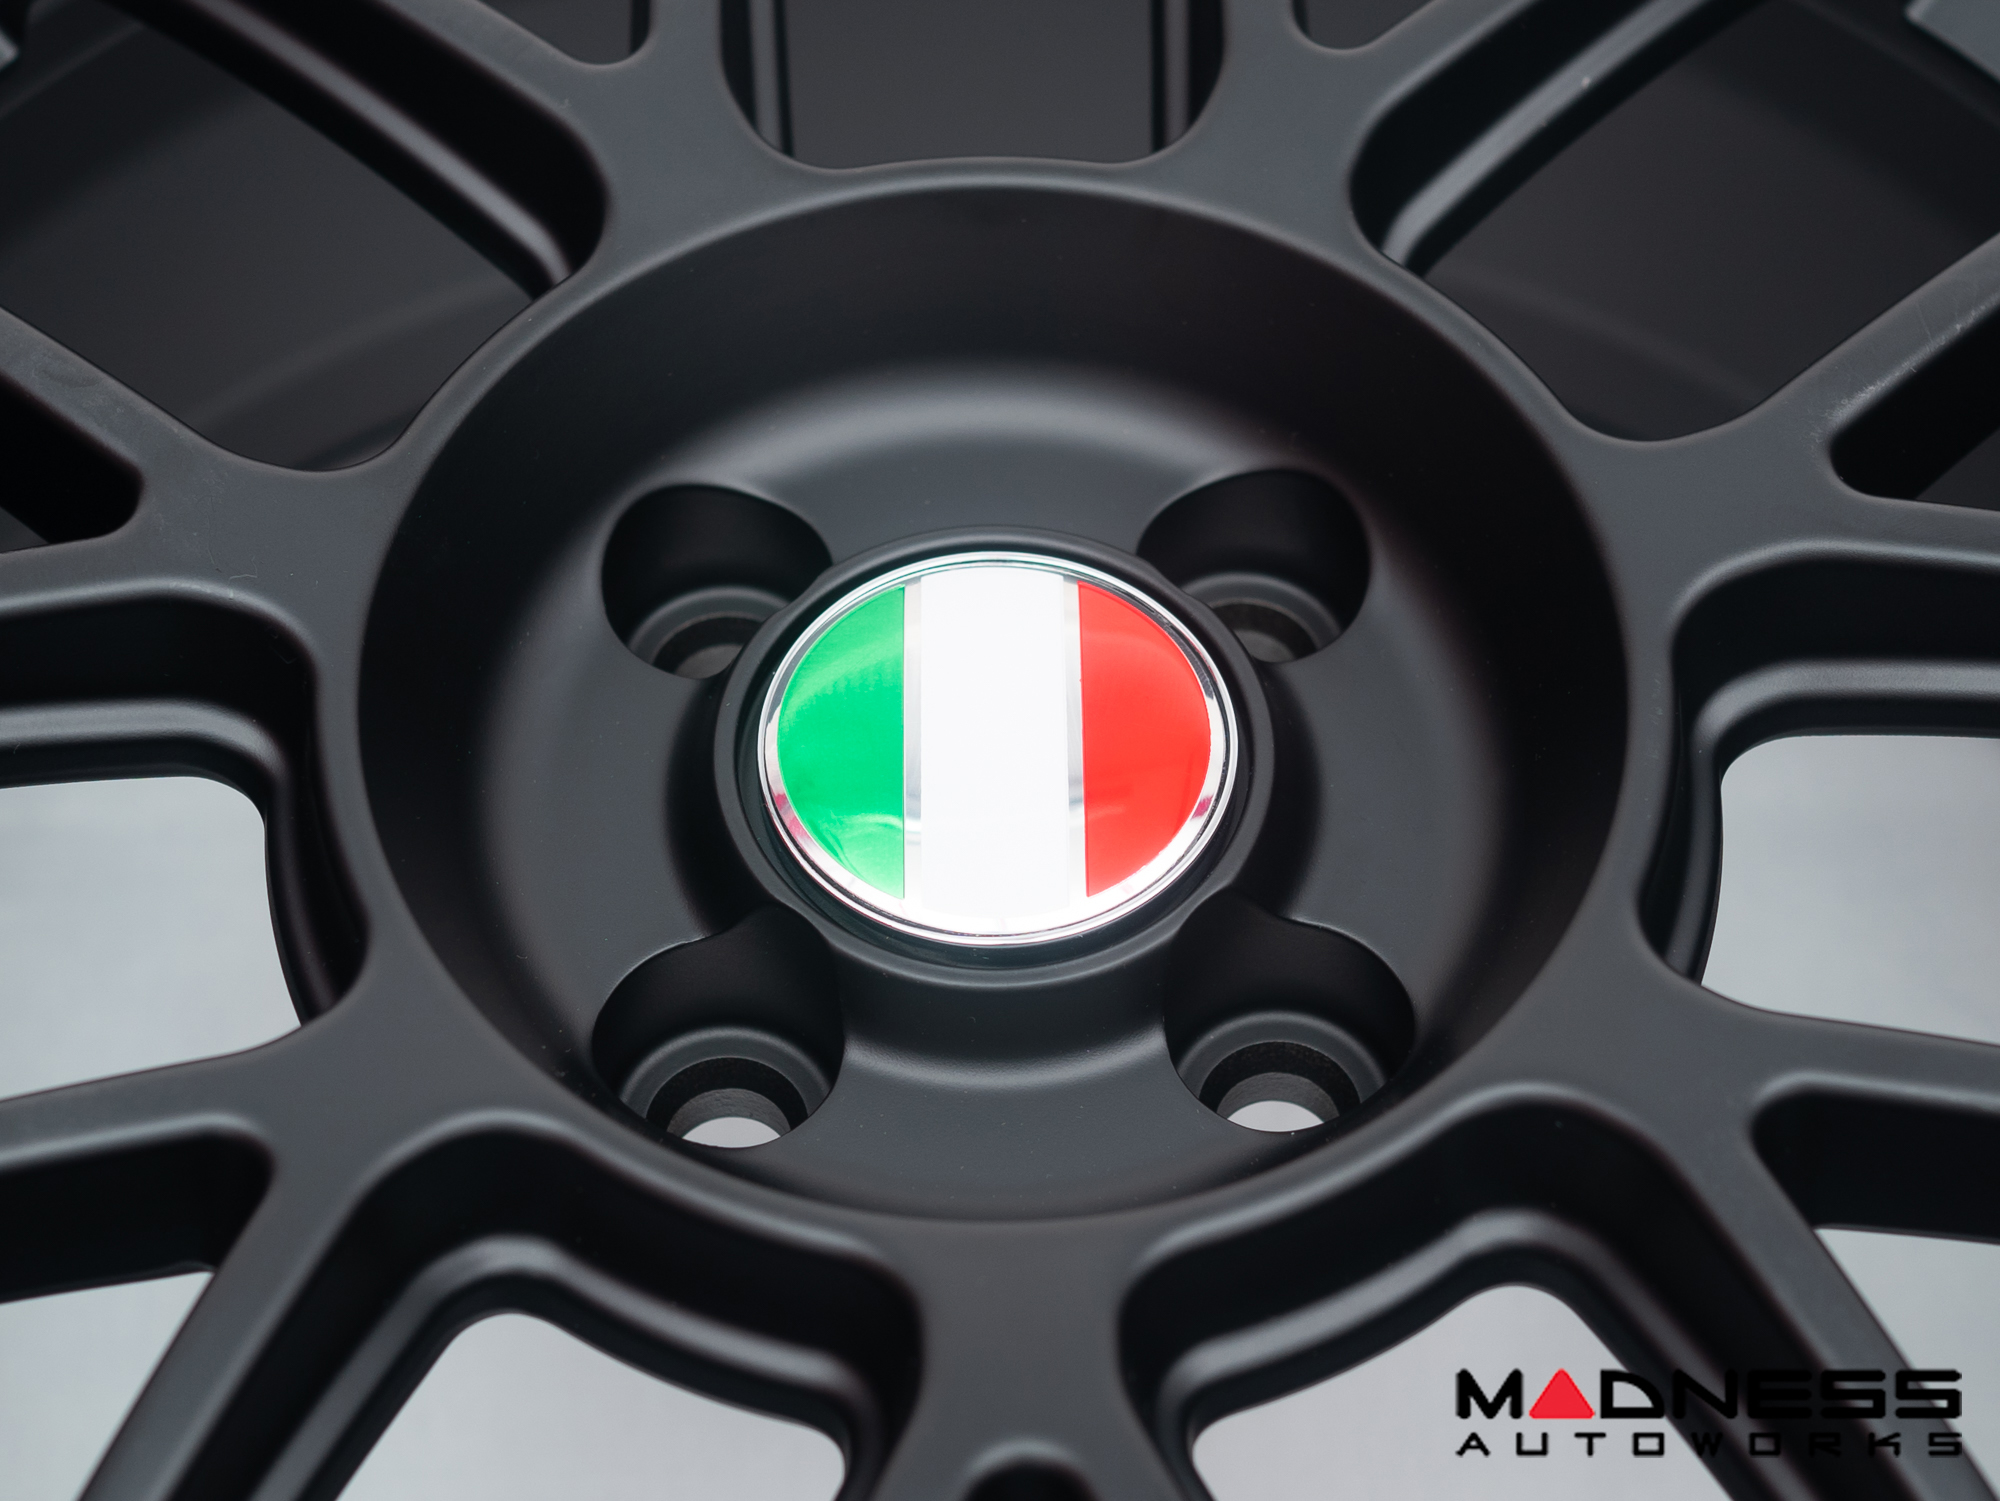 Wheel Center Caps - set of 4 - Italian Flag - 60mm 